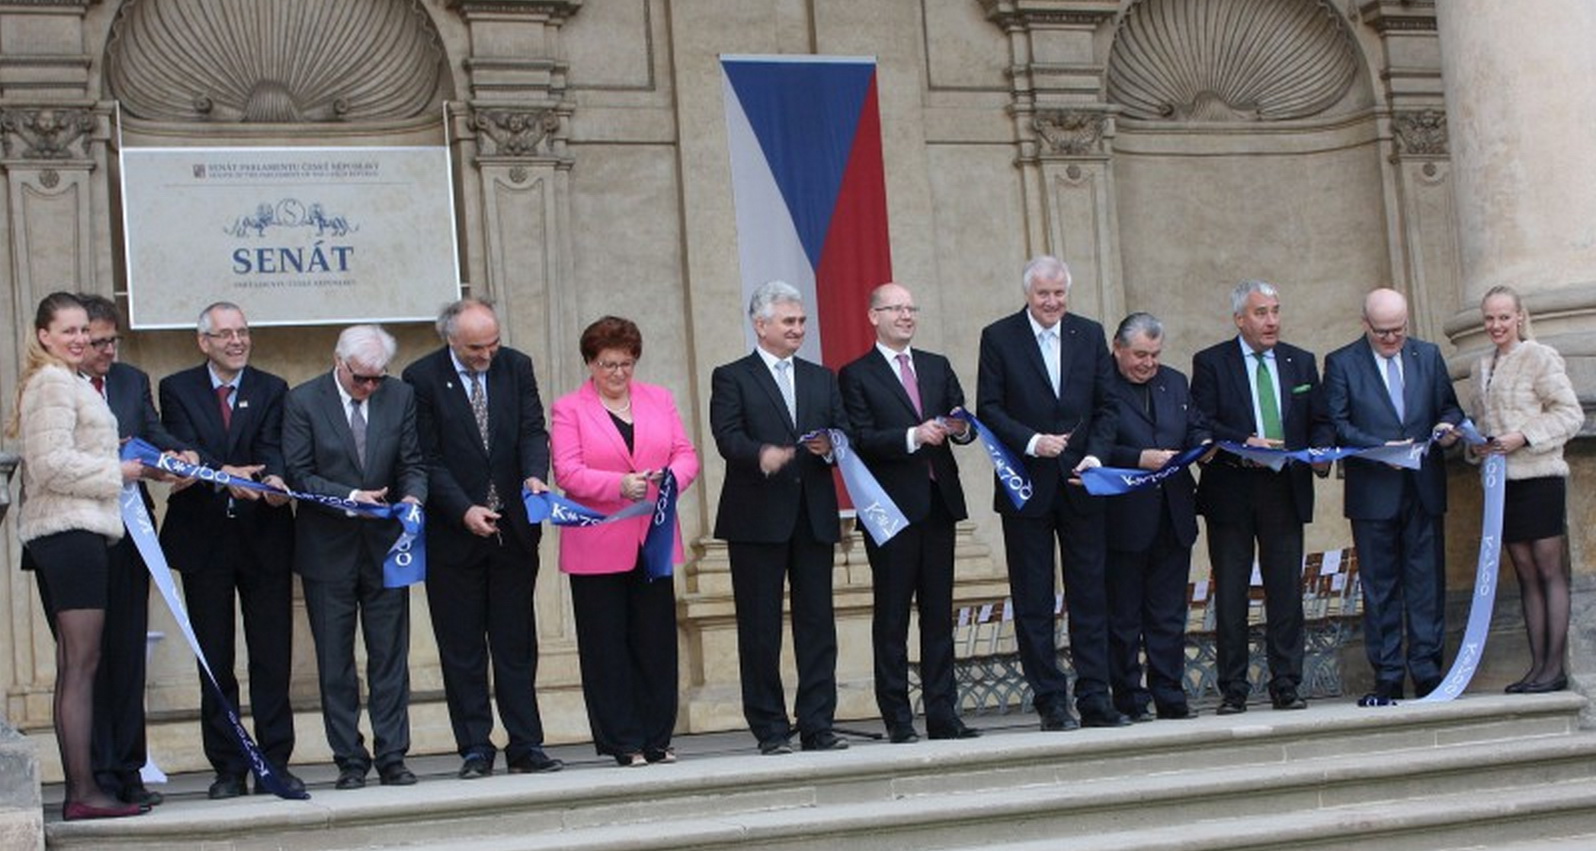 Feierliche Eröffnung der Bayerisch-Böhmischen Landesausstellung "Karl IV. 700 Jahre" in der tschechischen Hauptstadt Prag.